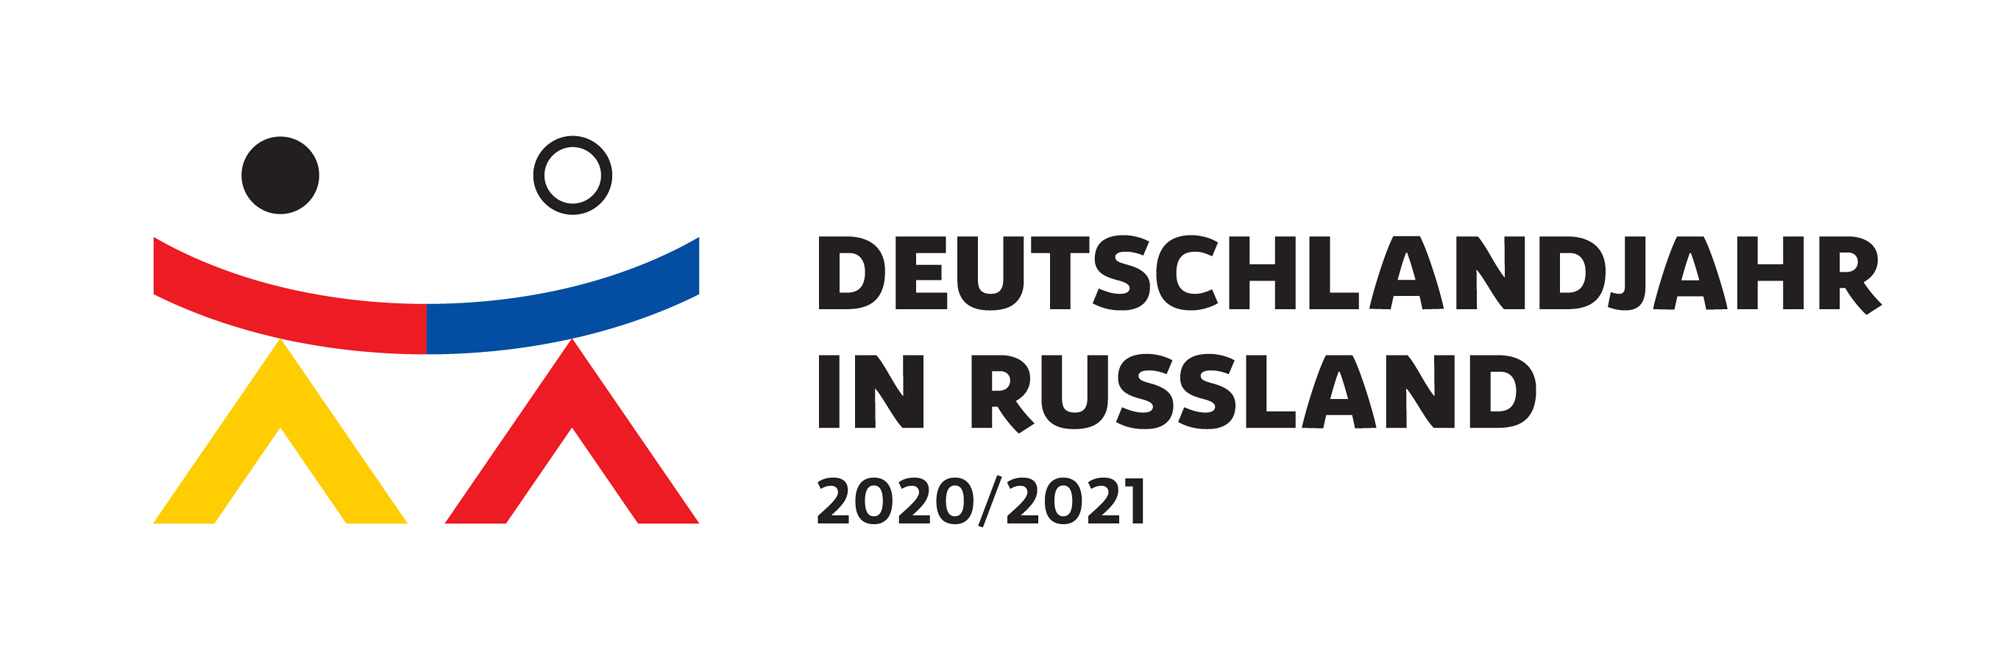 Deutschlandjahr in Russland 2020/2021